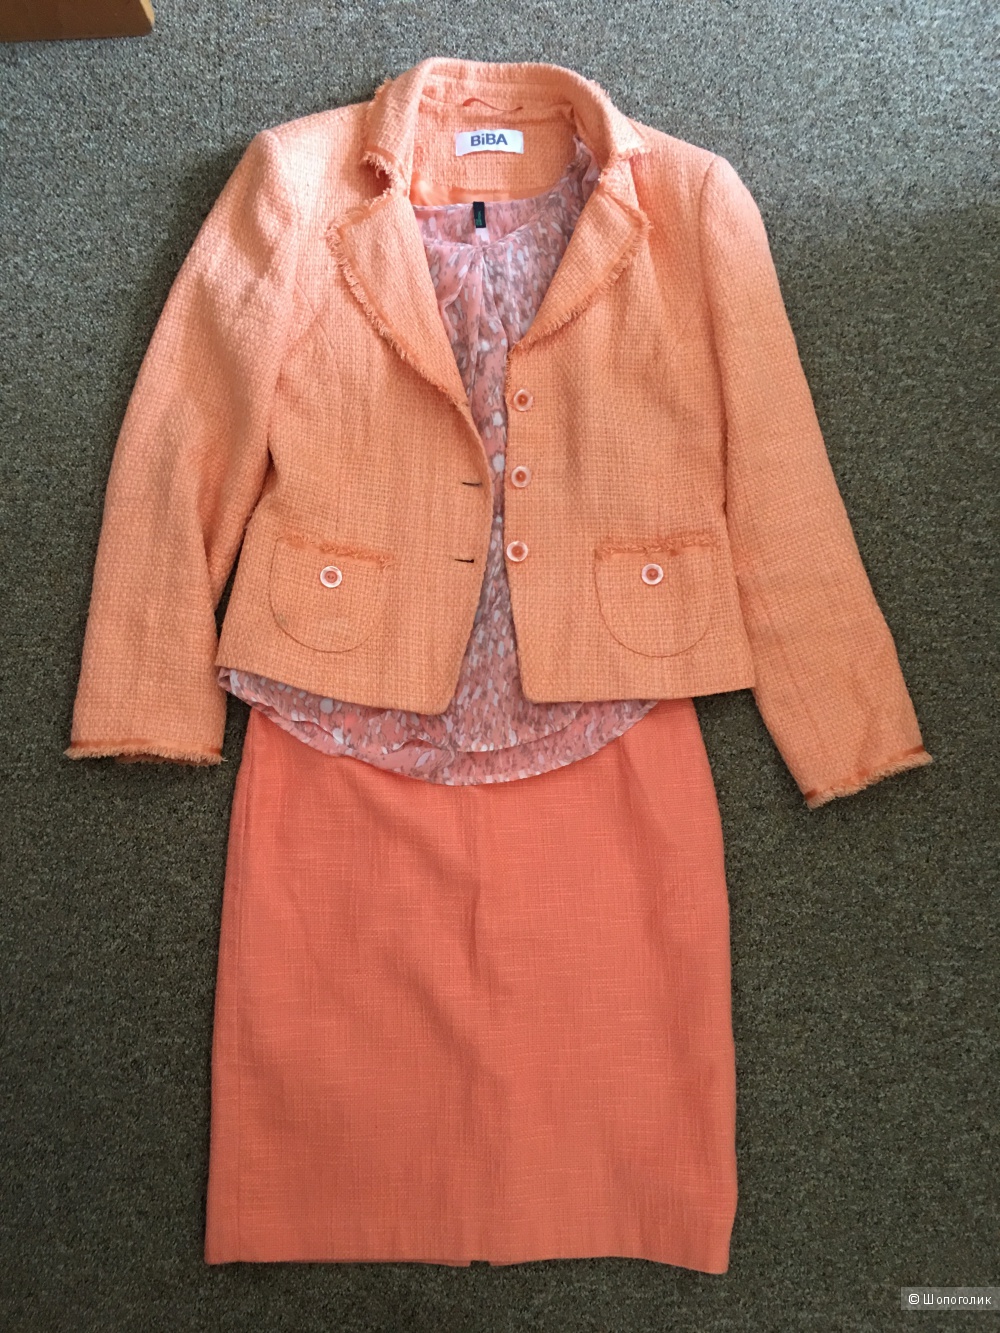 Оранжевый комплект пиджак блузка на 46 размер